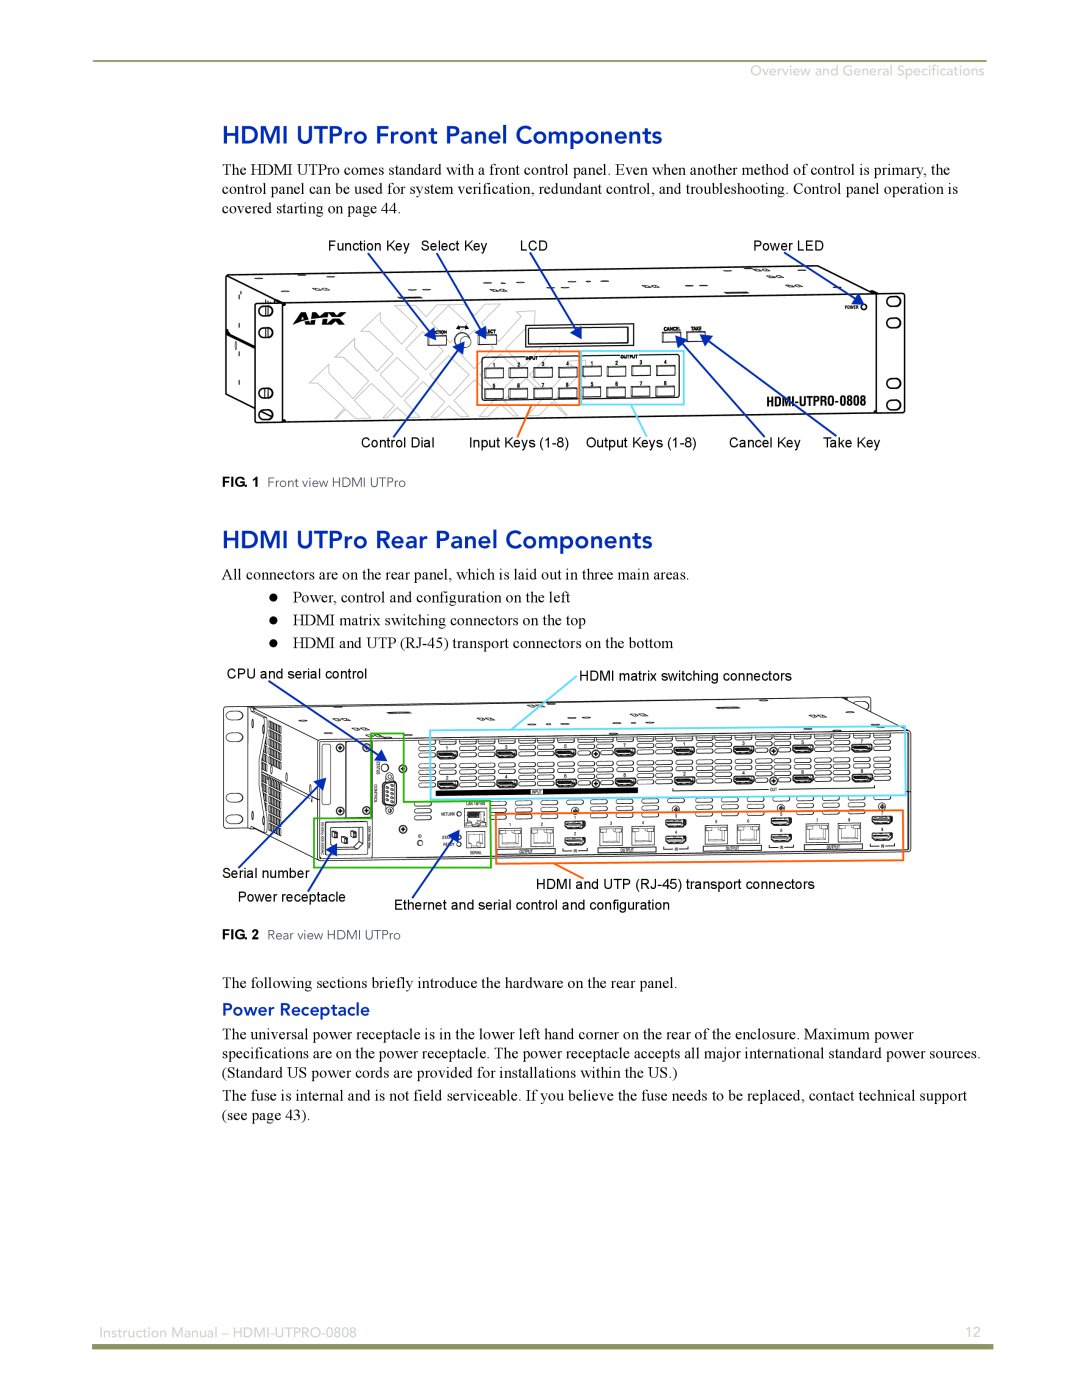 AMX HDMI-UTPRO-0808 HDMI UTPro Front Panel Components, HDMI UTPro Rear Panel Components, Power Receptacle 